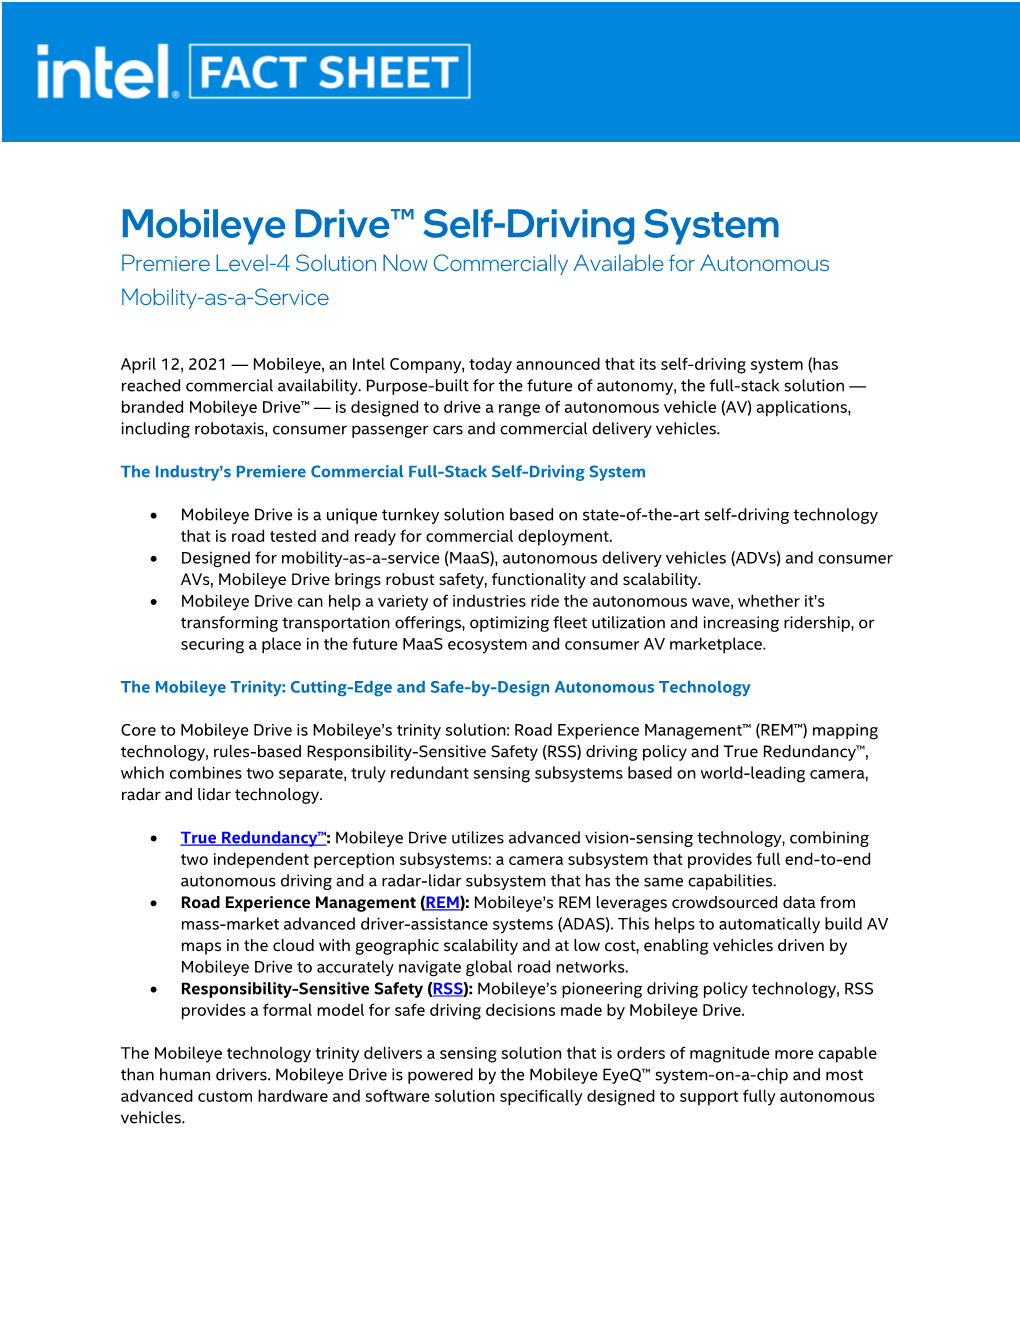 Mobileye Drive Fact Sheet